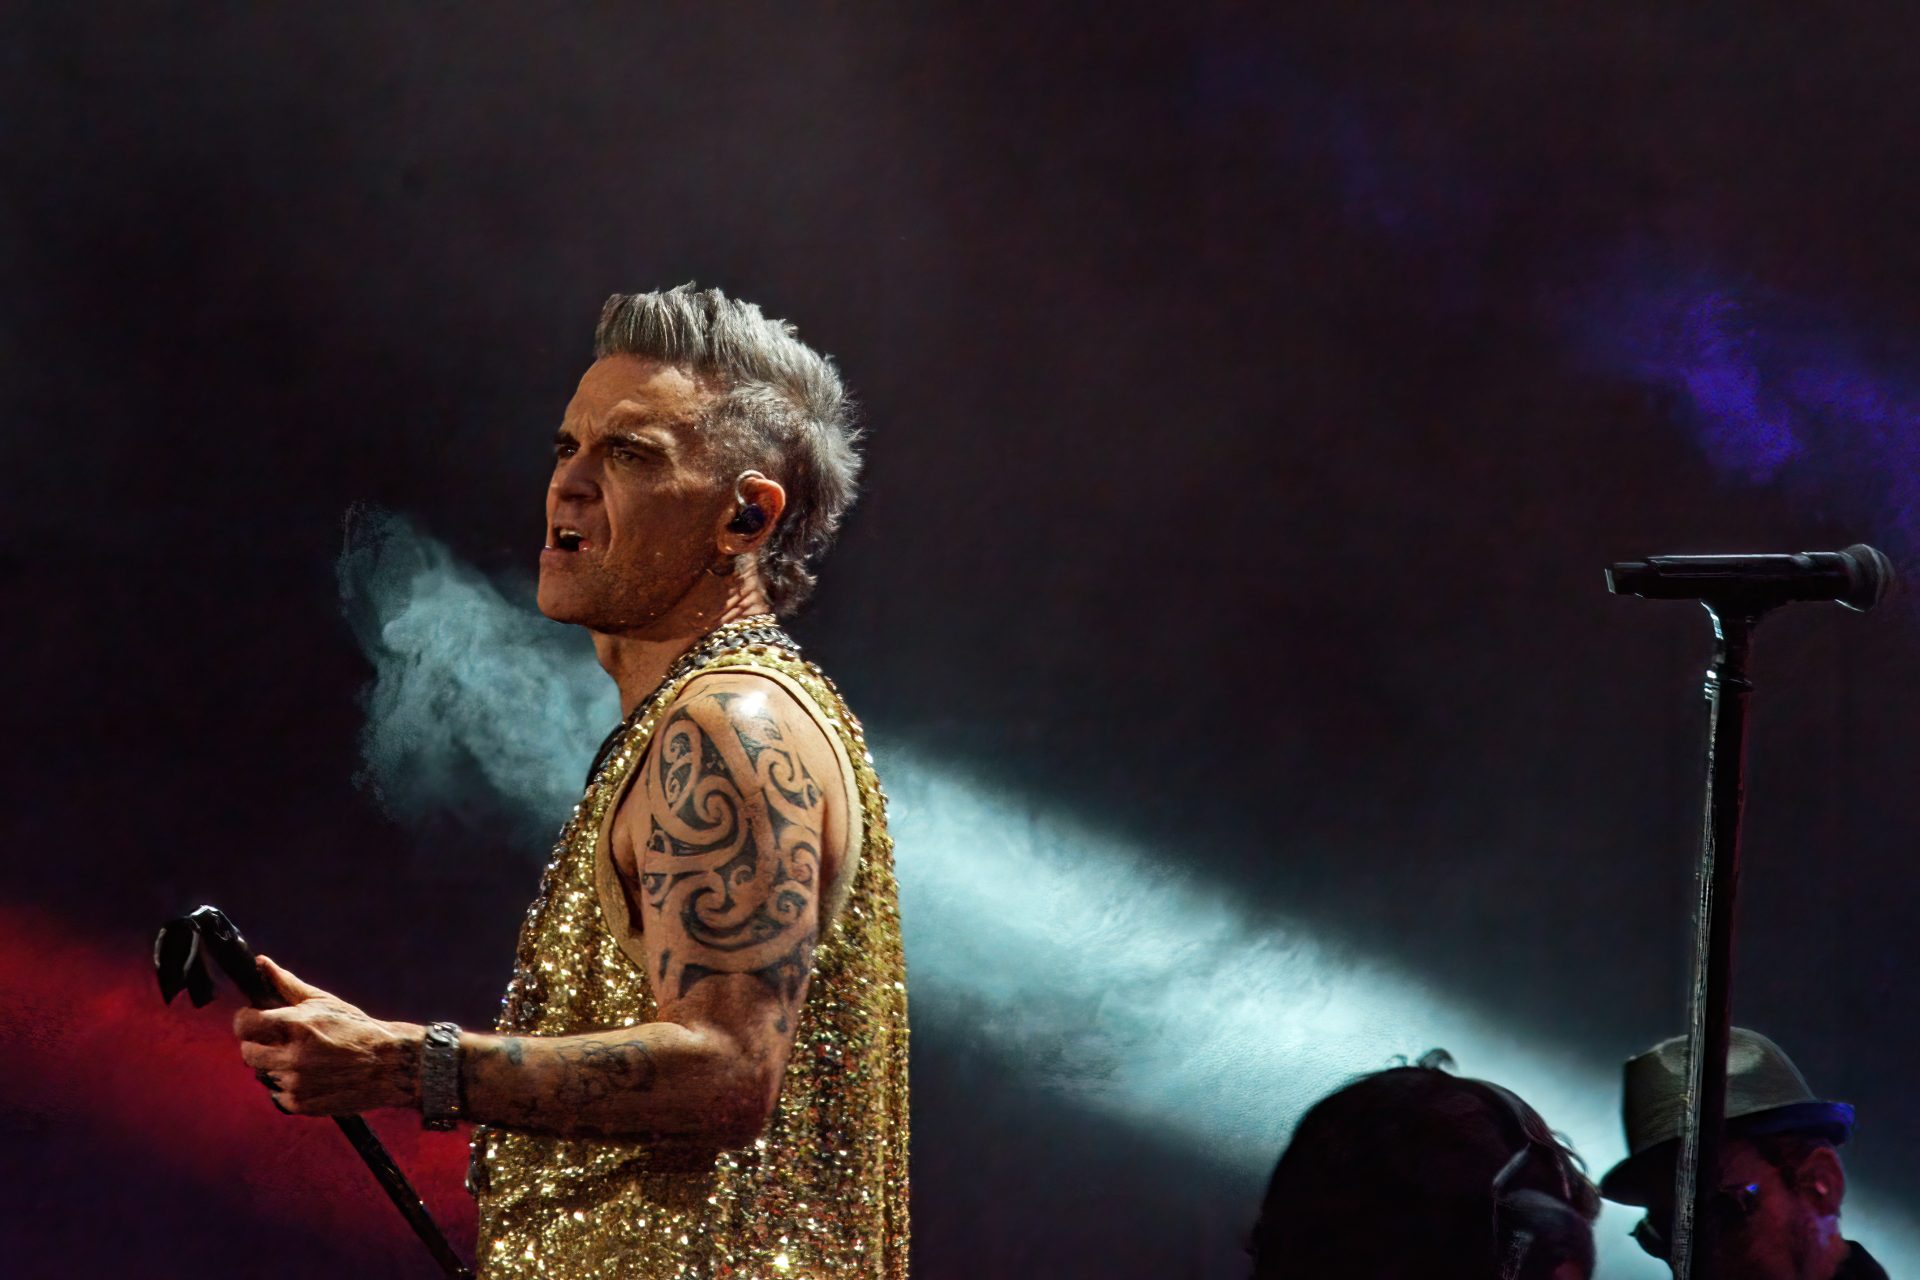 Robbie Williams no se pronunciado todavía y su gira australiana sigue adelante